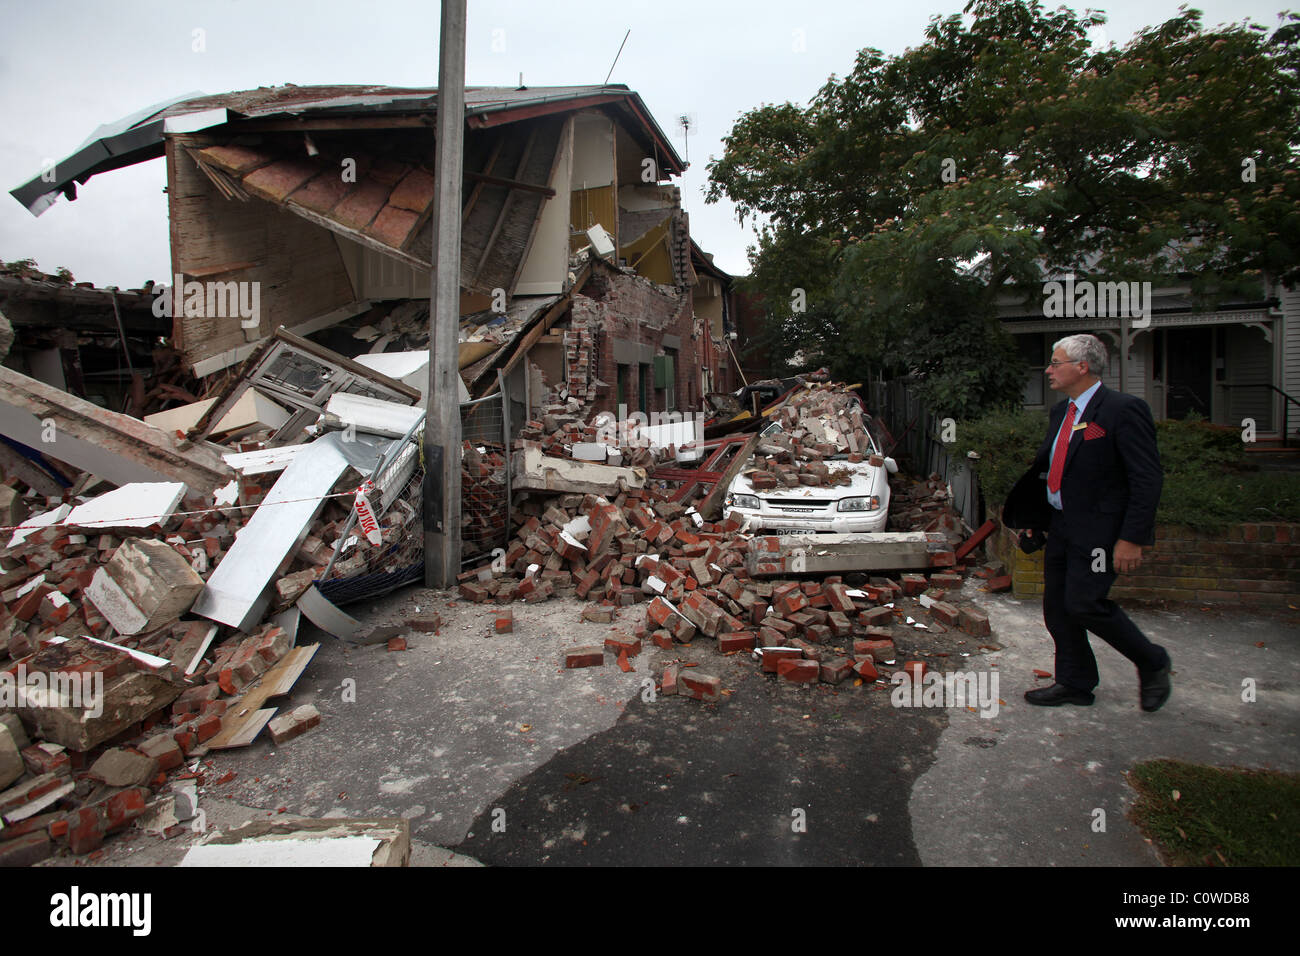 Uomo che cammina passato una proprietà in rovina sulla Bealey Avenue, Christchurch, Nuova Zelanda, dopo il 6.3 terremoto di magnitudine Foto Stock